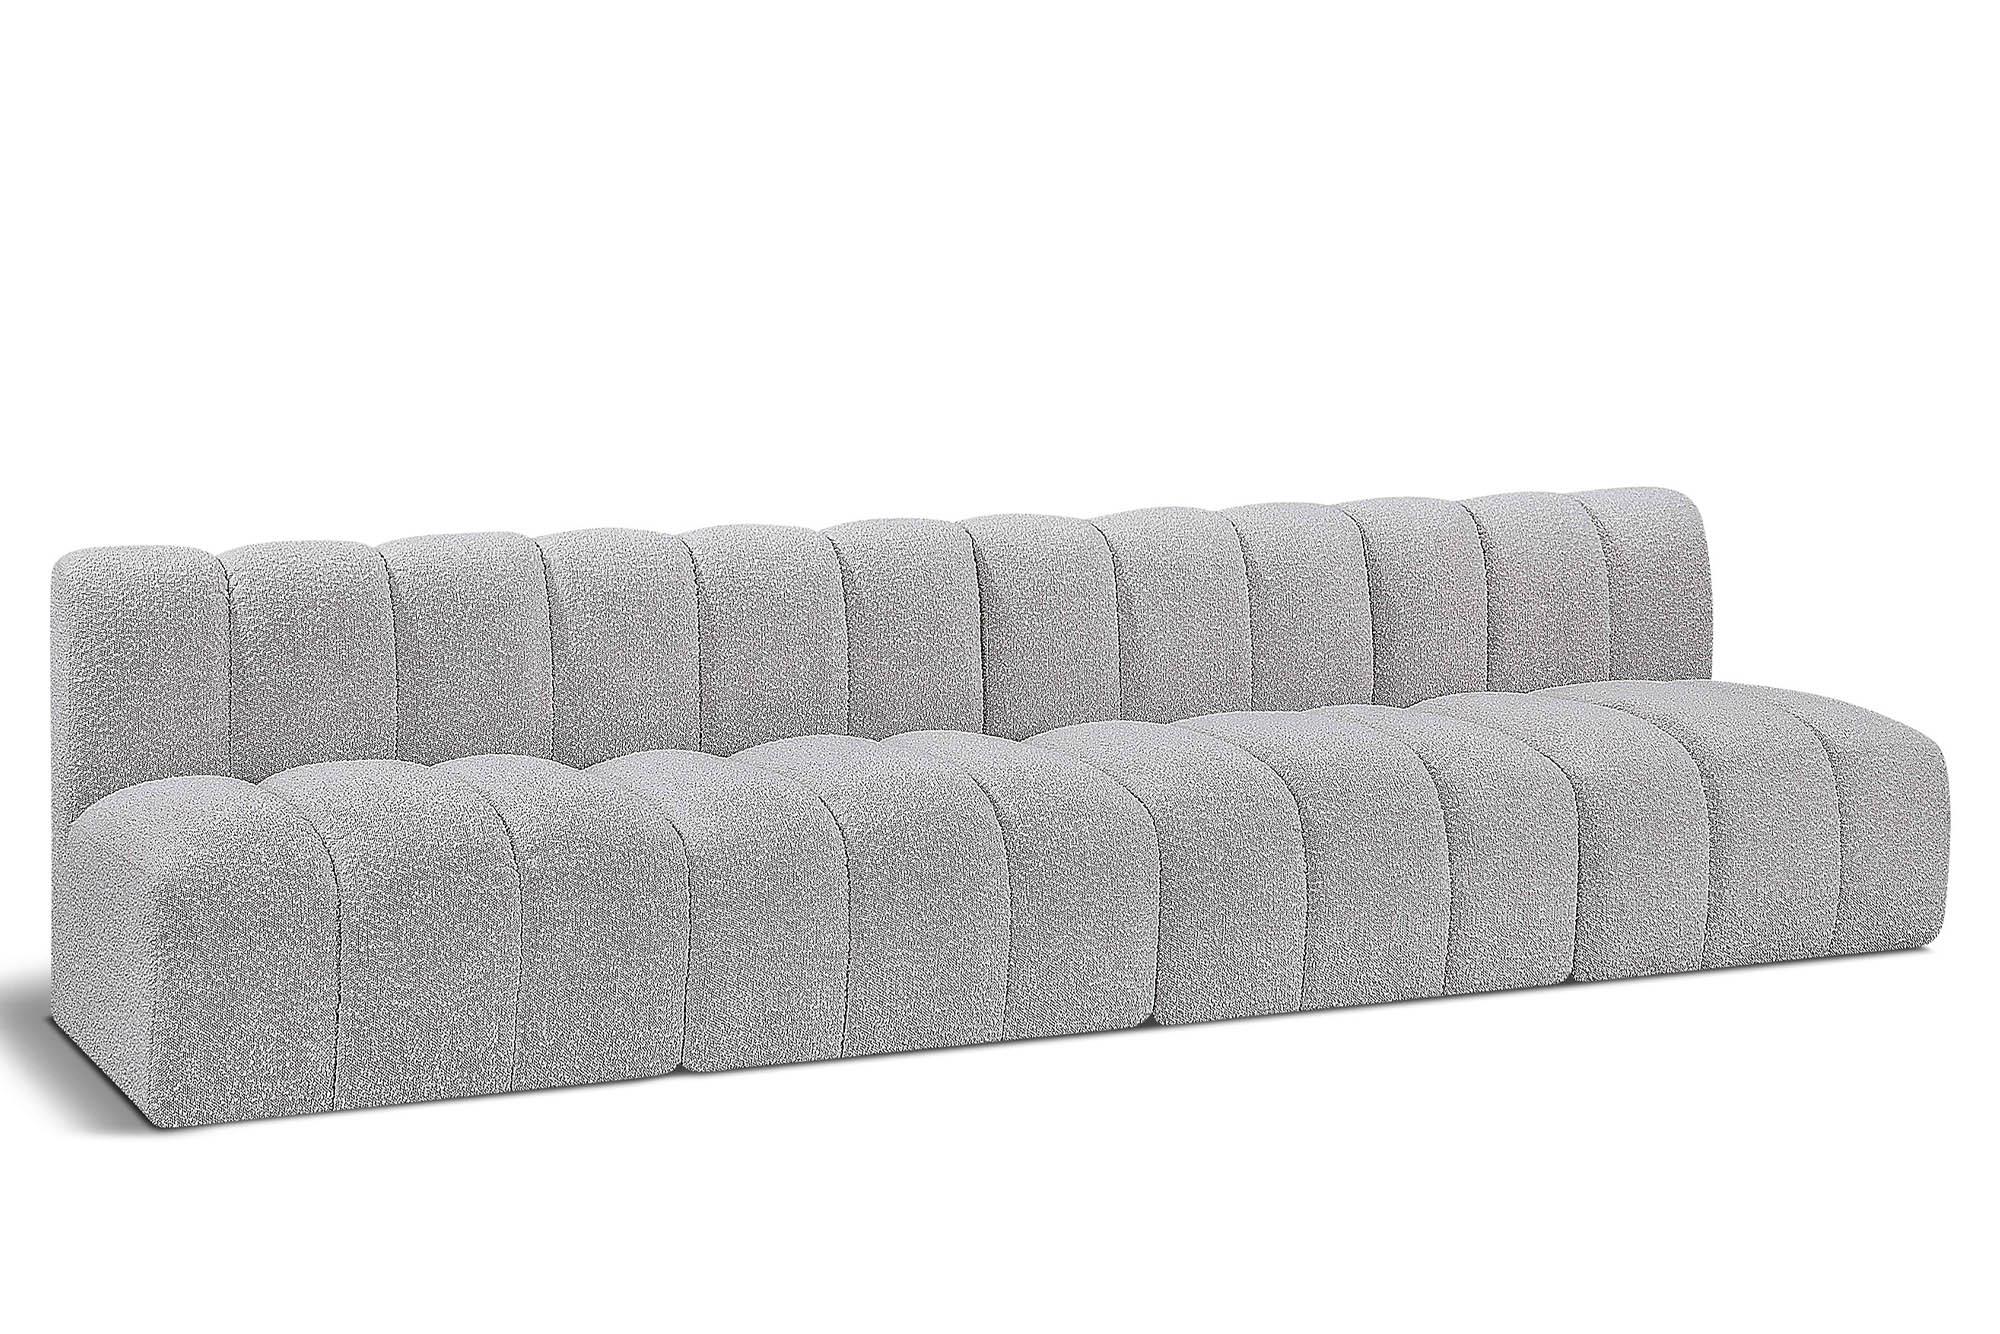 Contemporary, Modern Modular Sectional Sofa ARC 102Grey-S4E 102Grey-S4E in Gray 